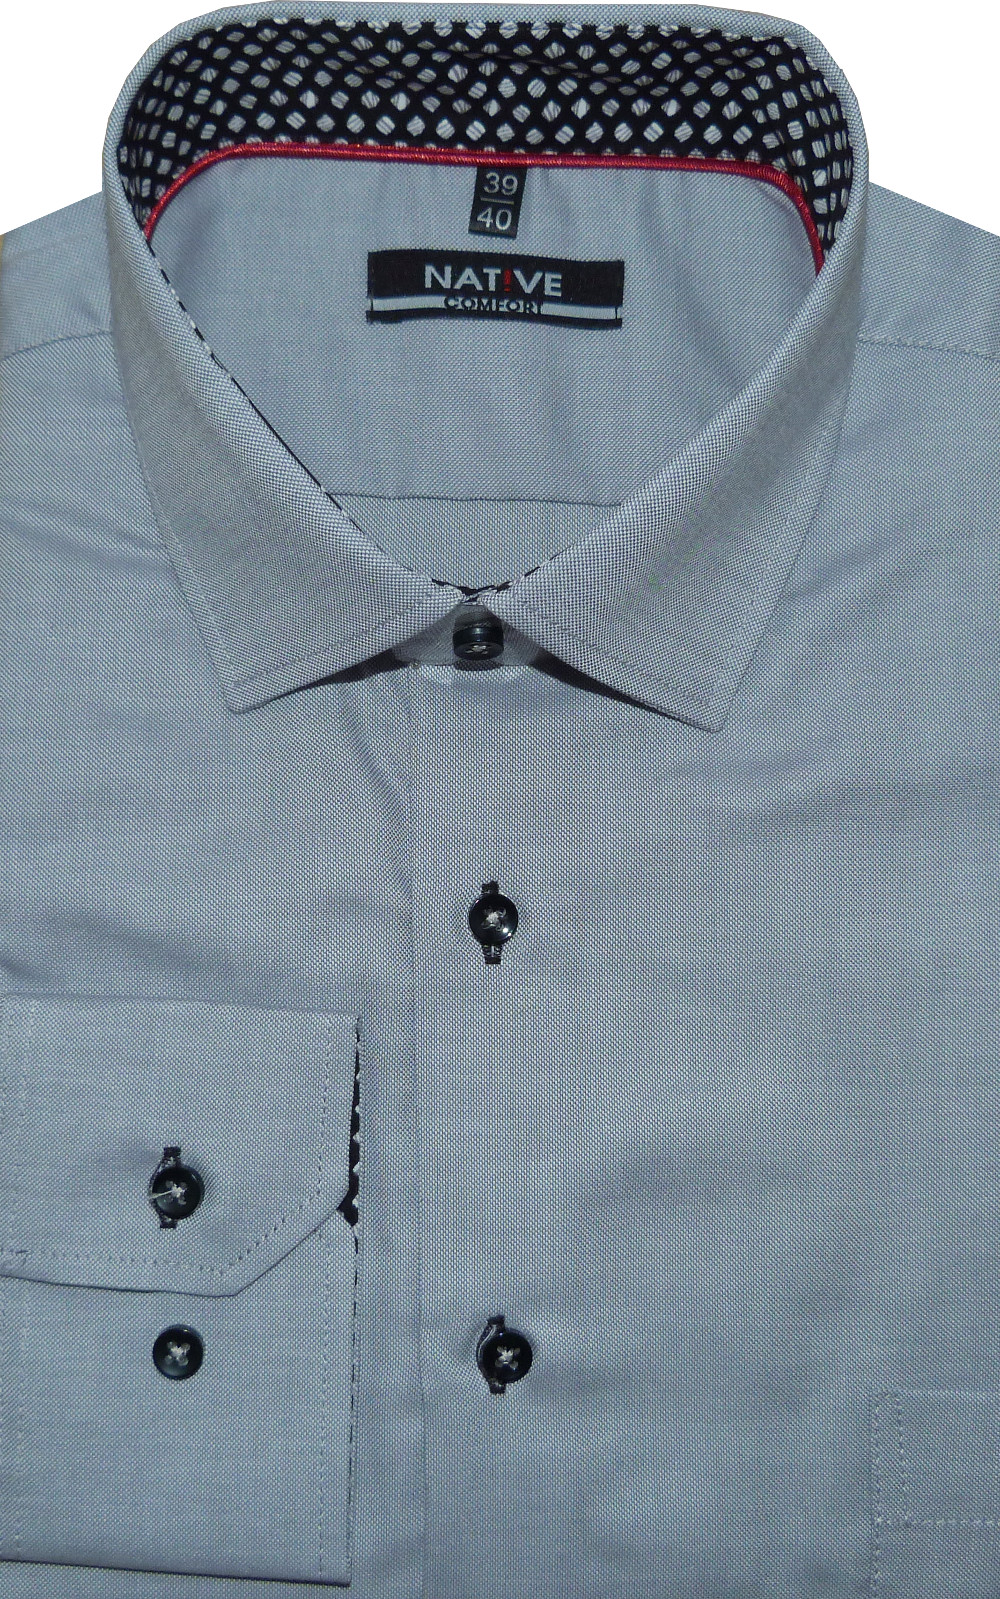 Pánská košile (šedá) s dlouhým rukávem, vel. 39/40 - N195/310